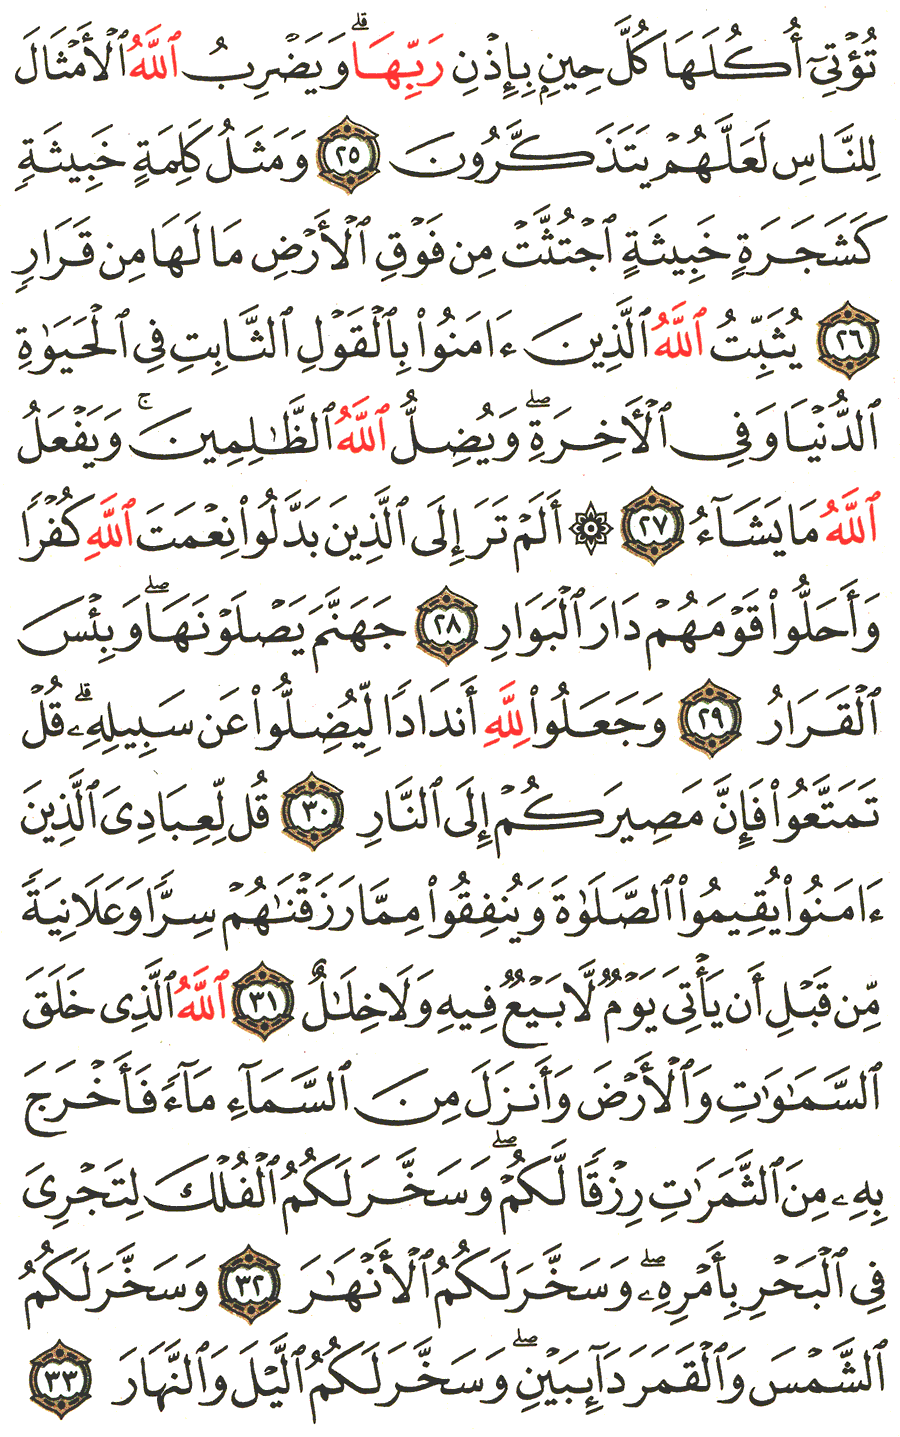 الصفحة 259 من القرآن الكريم